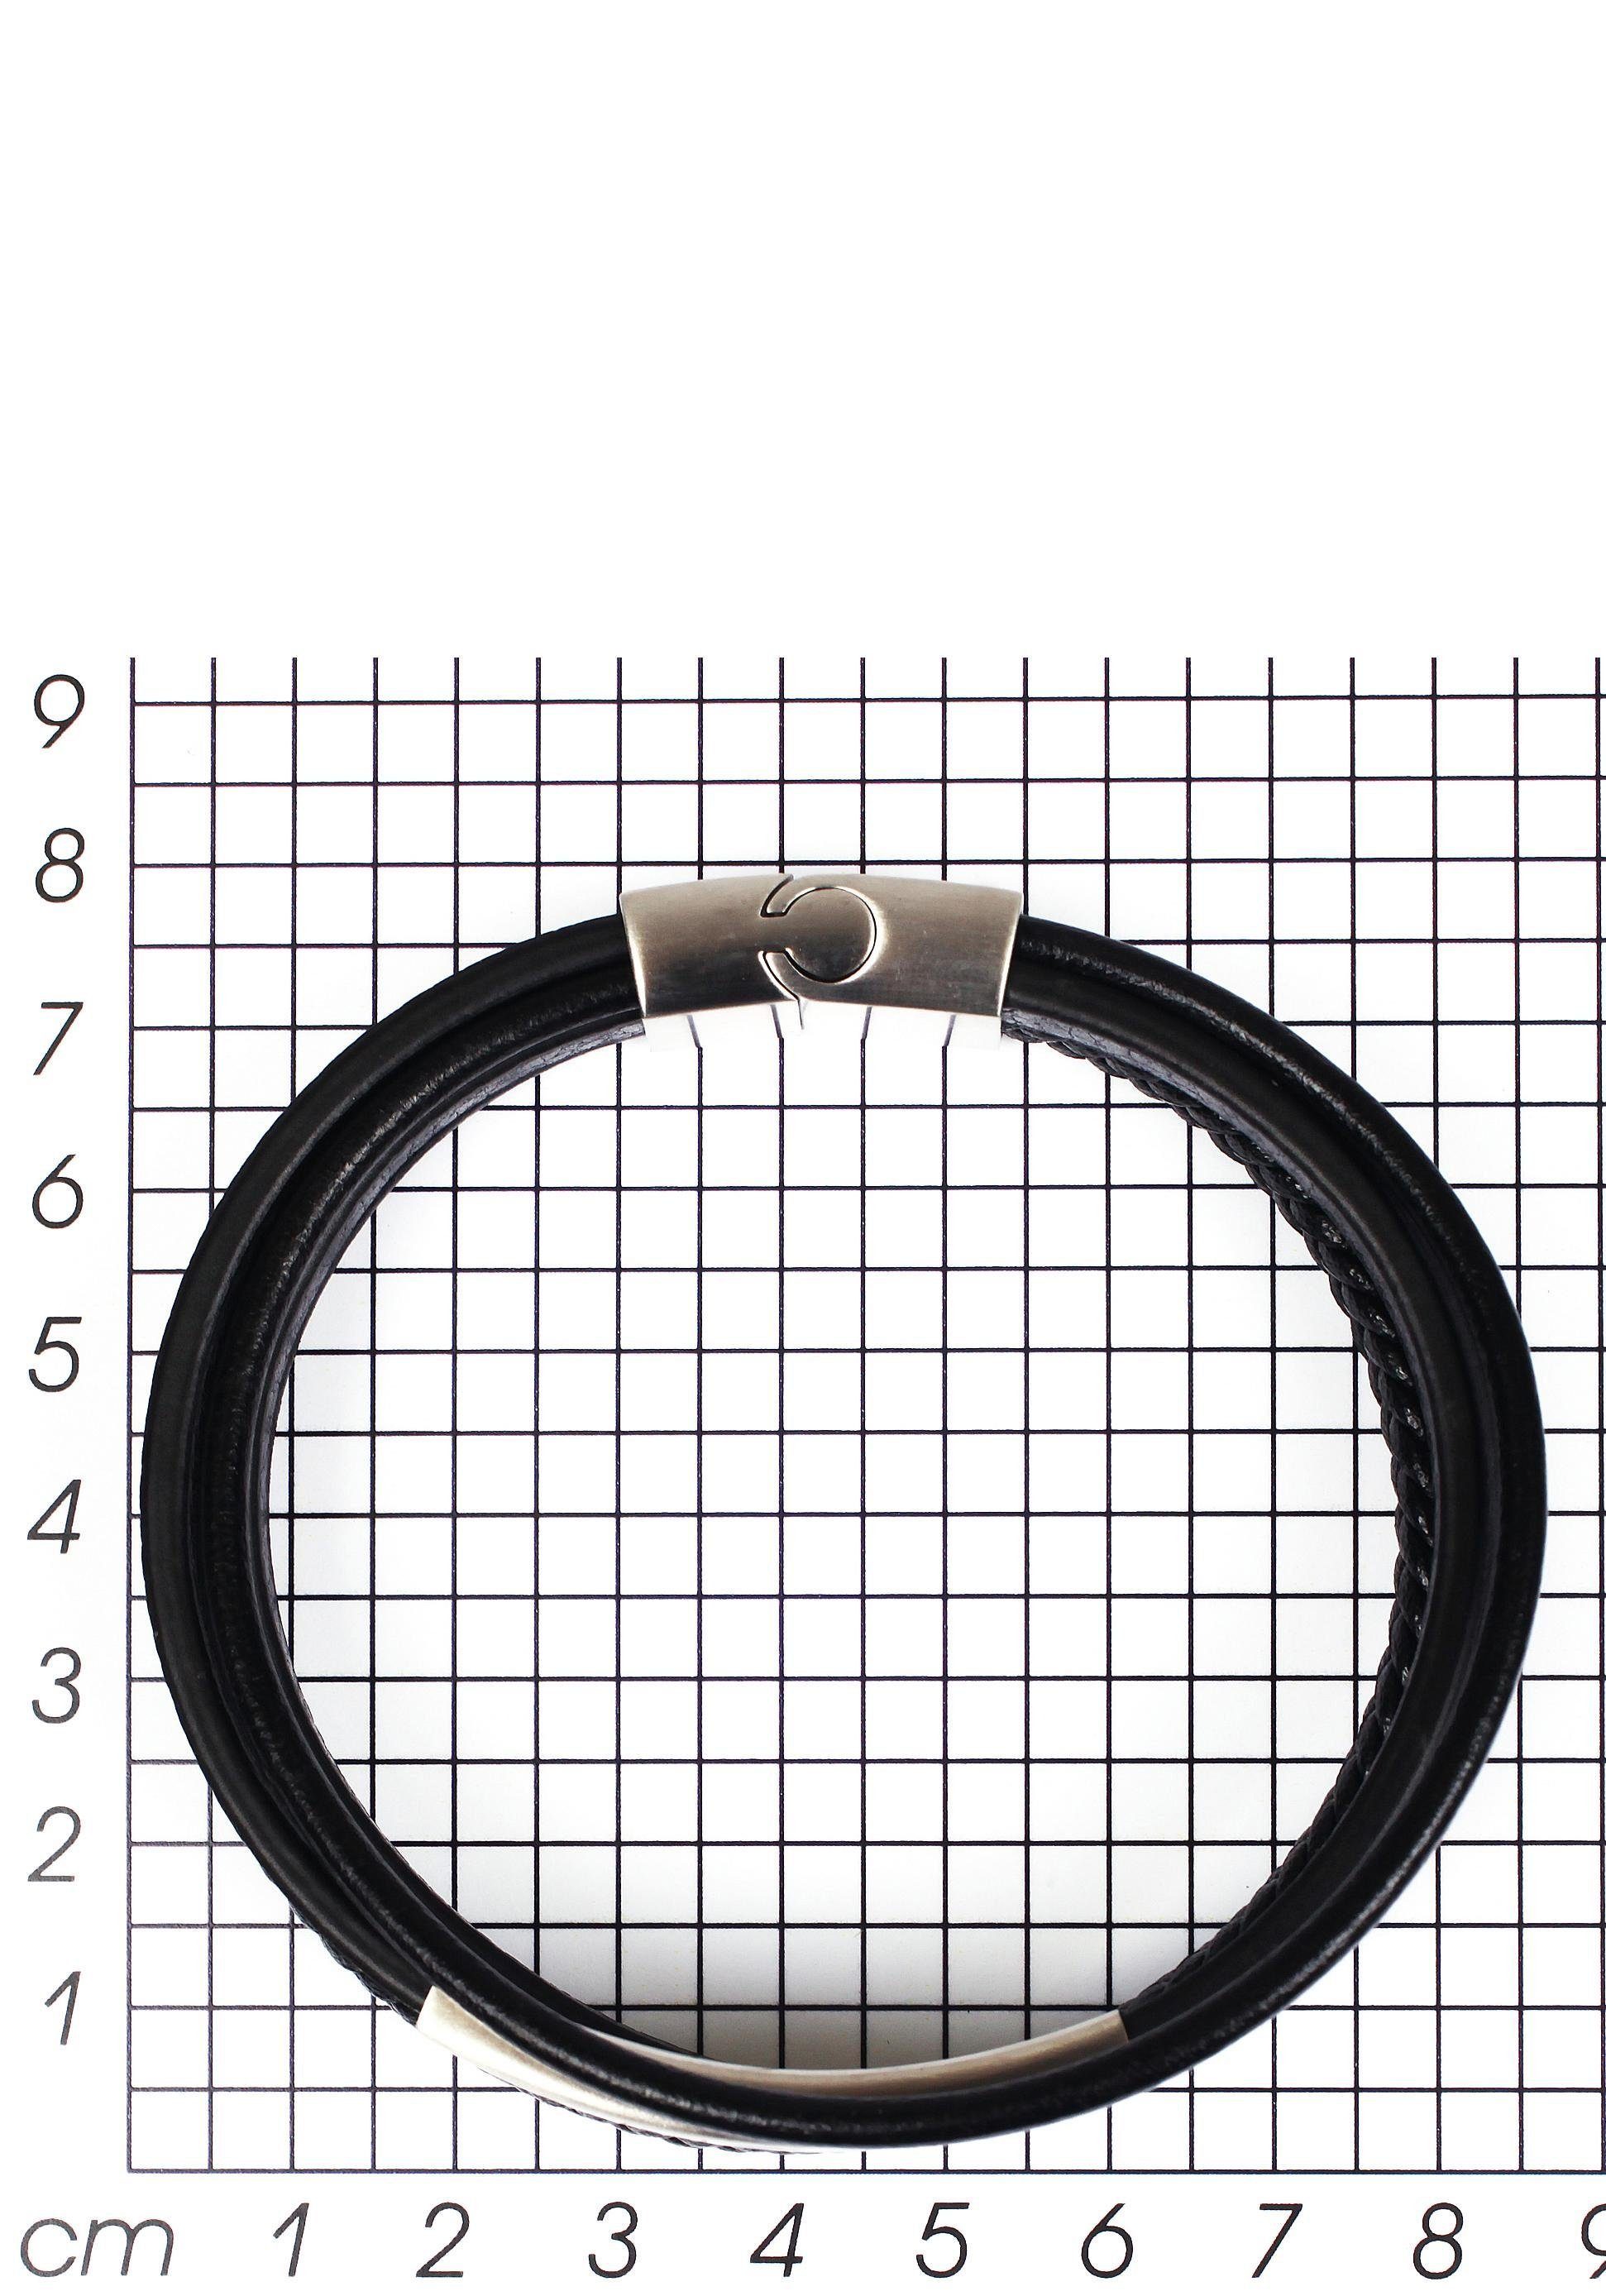 Firetti Armband stylisches Design im edelstahlfarben-schwarz sportlich-eleganten Stil, mehrreihig